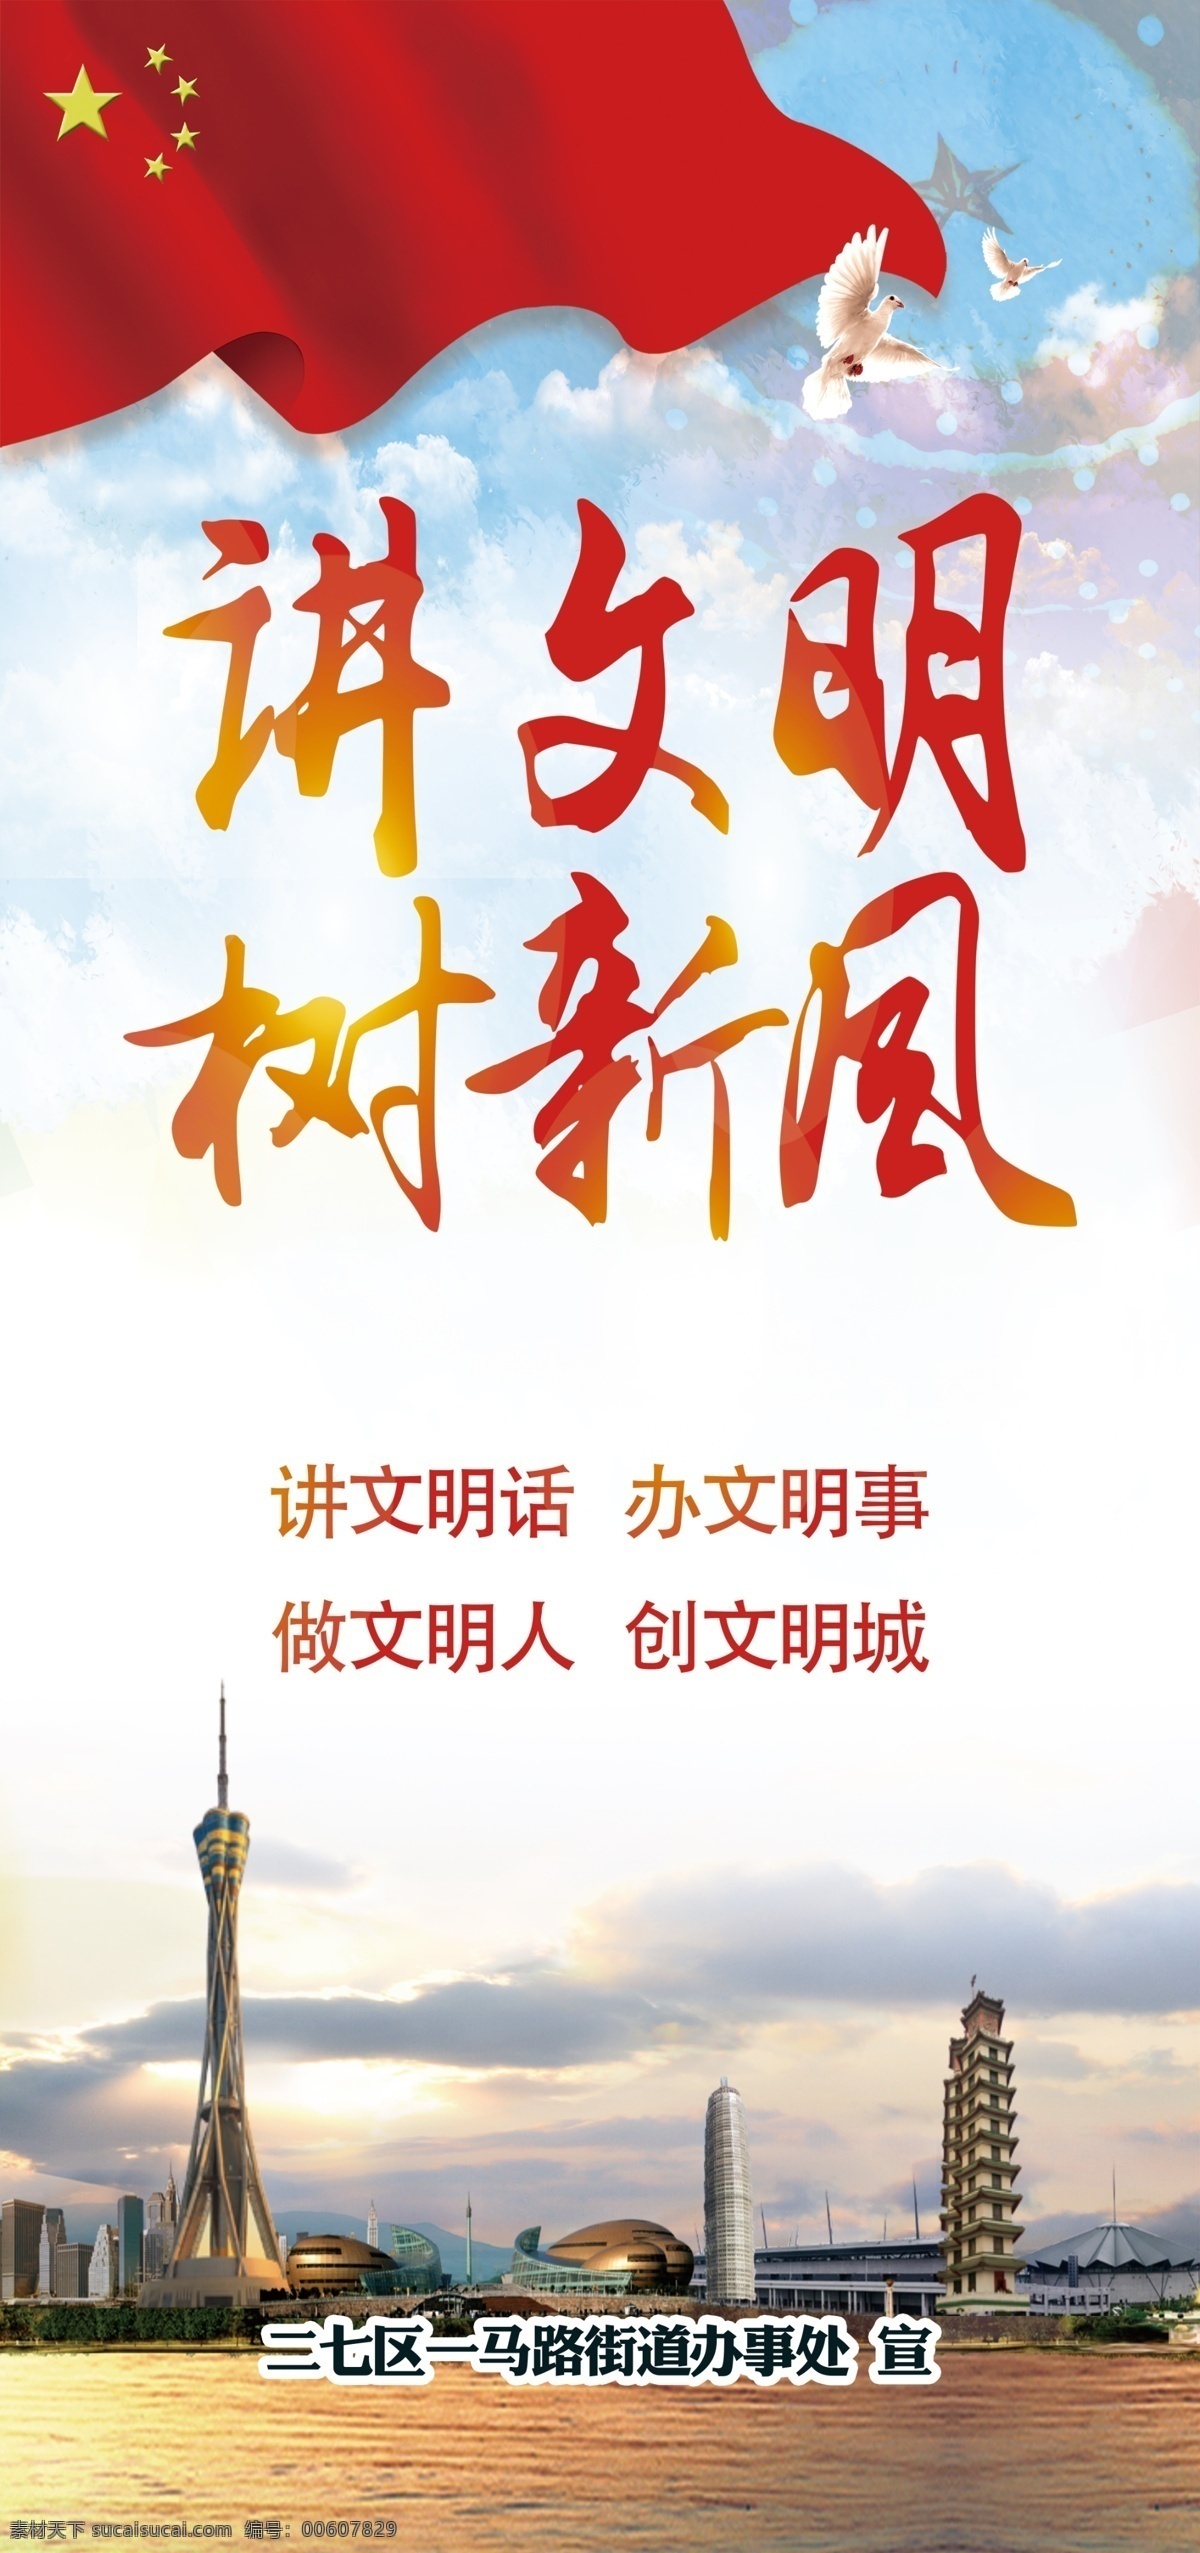 讲 文明 树 新风 展板 河南 郑州标志 公 益海报 党 建 办事处